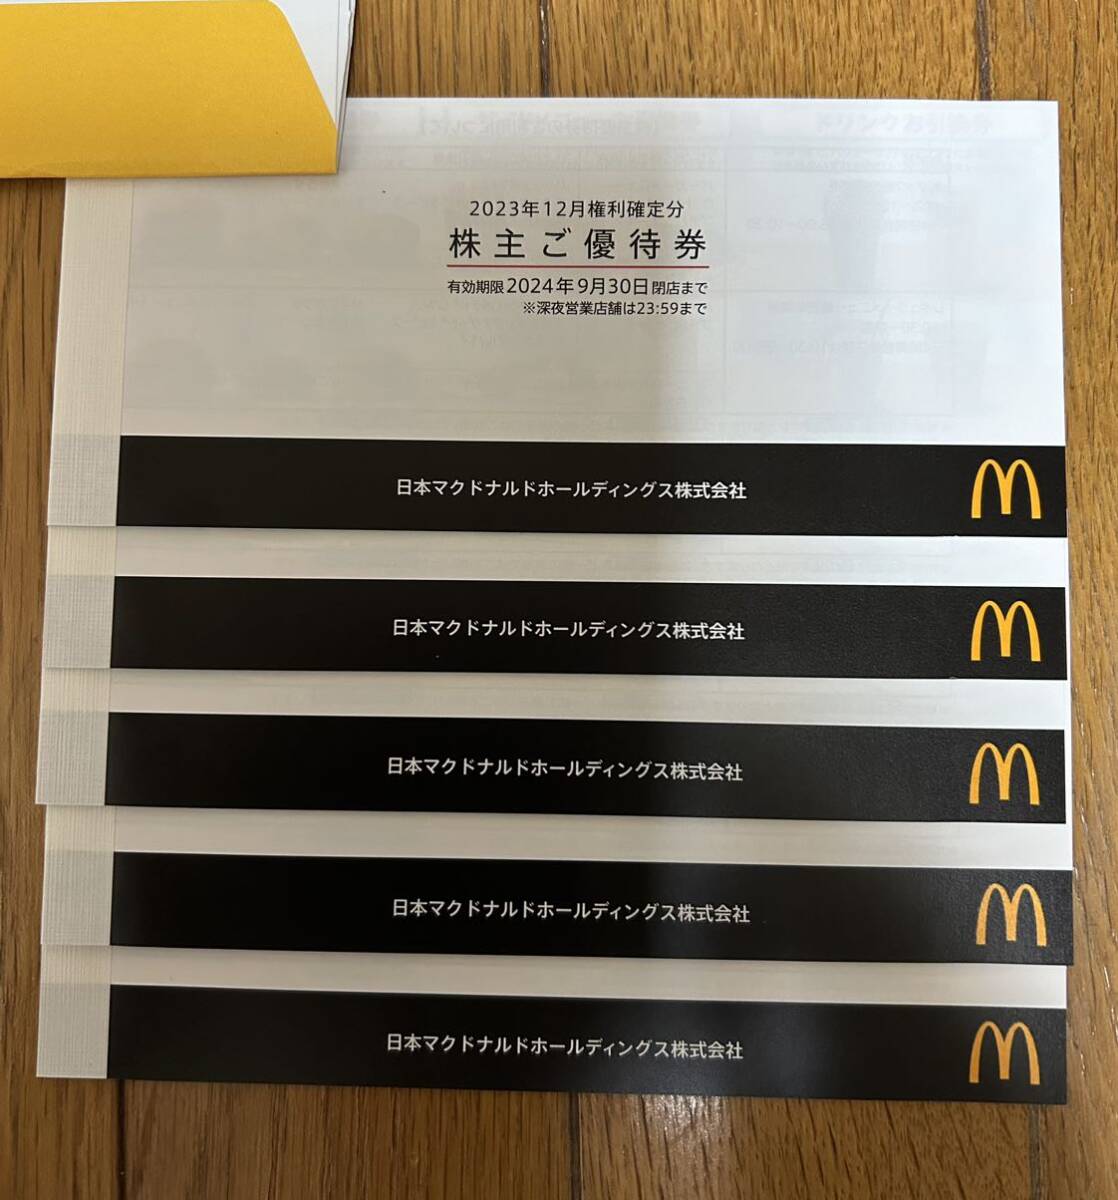  McDonald's акционер пригласительный билет 6 листов ..5 шт. 